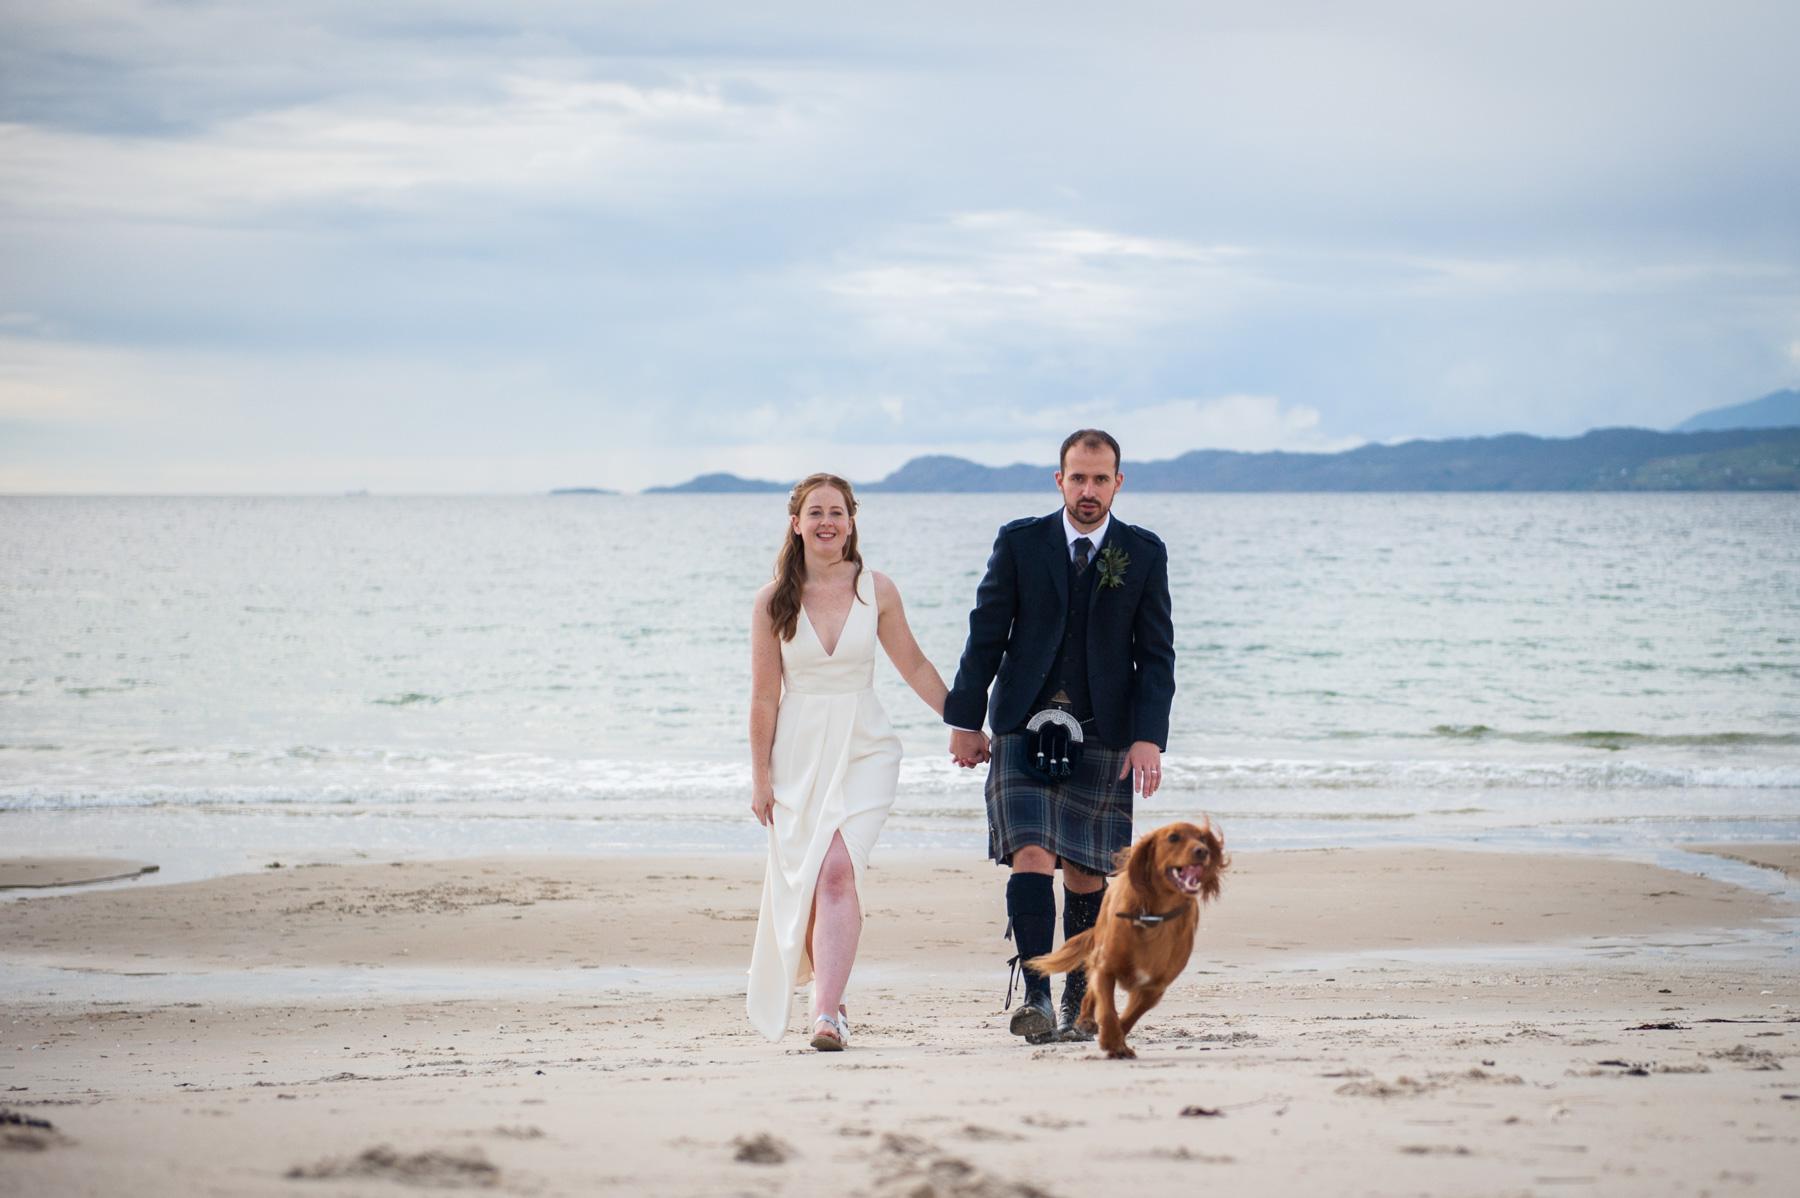 Scottish Highland wedding photography